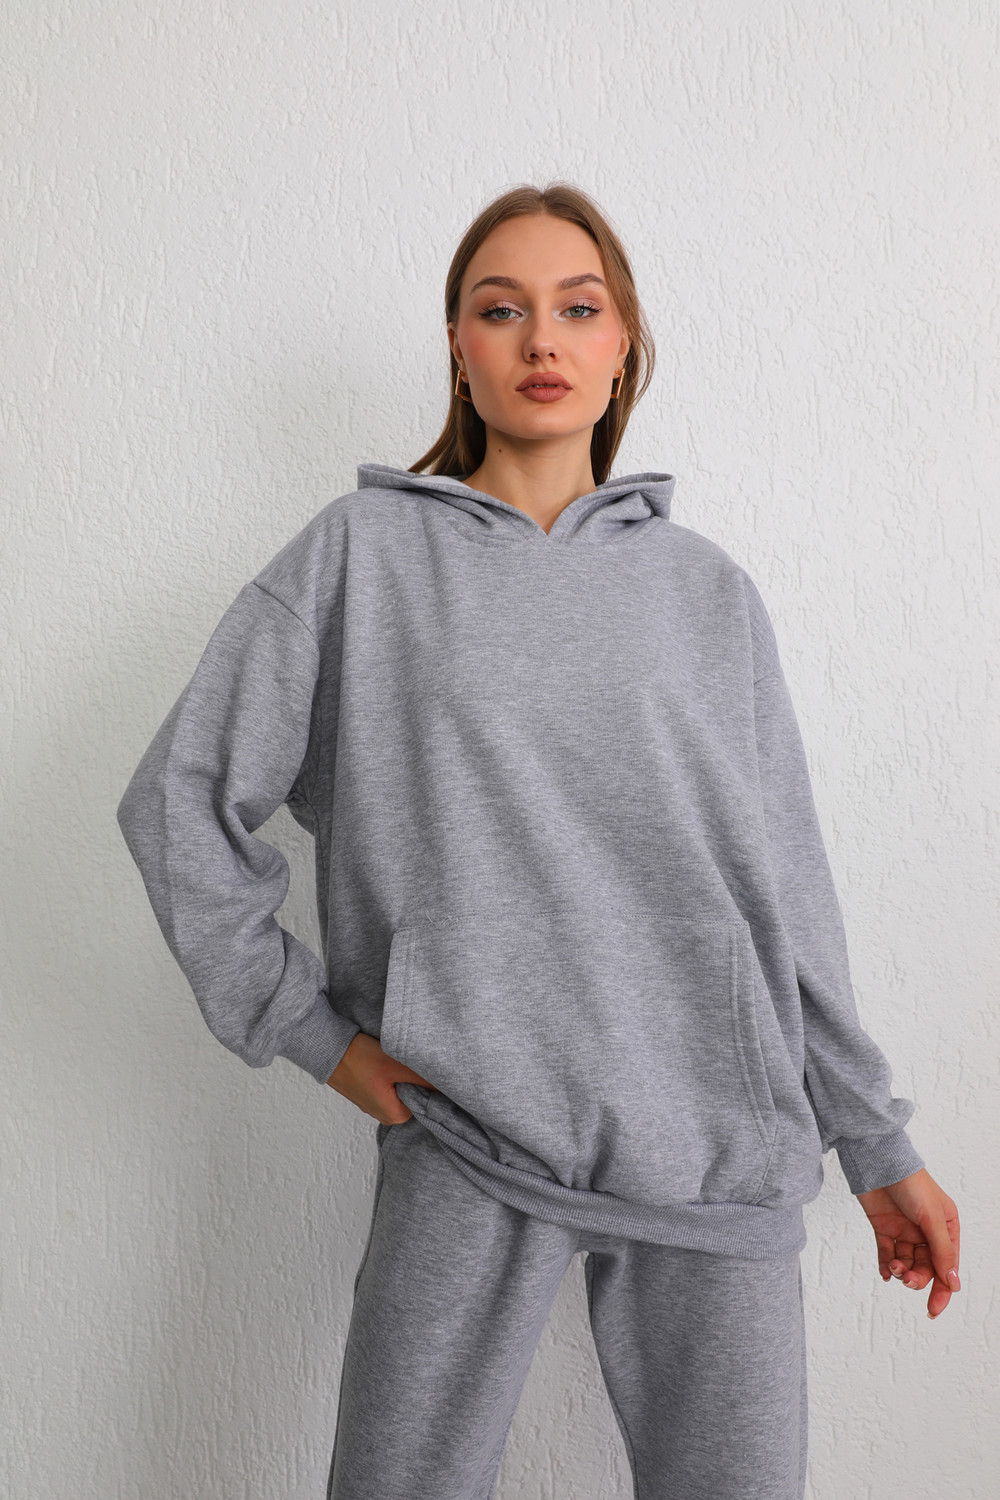 BİKELİFE Women's Gray Oversize Raised Three Thread Hooded Sweatshirt